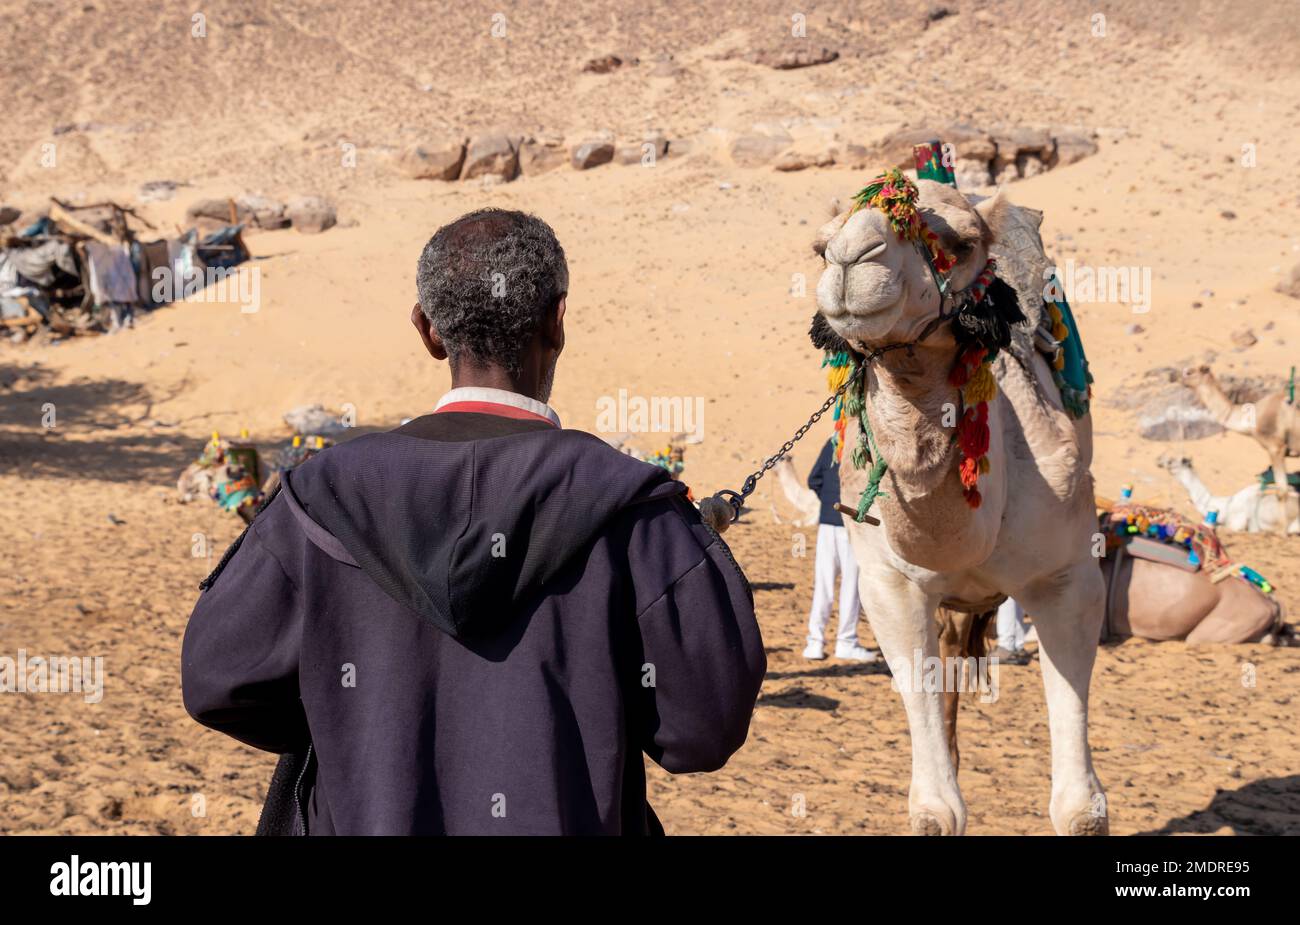 Vieil homme nubien, arabe, égyptien méconnaissable en arrière tirant un chameau dans le désert. Abus de cruauté envers les animaux. Concept de protection des animaux. Banque D'Images